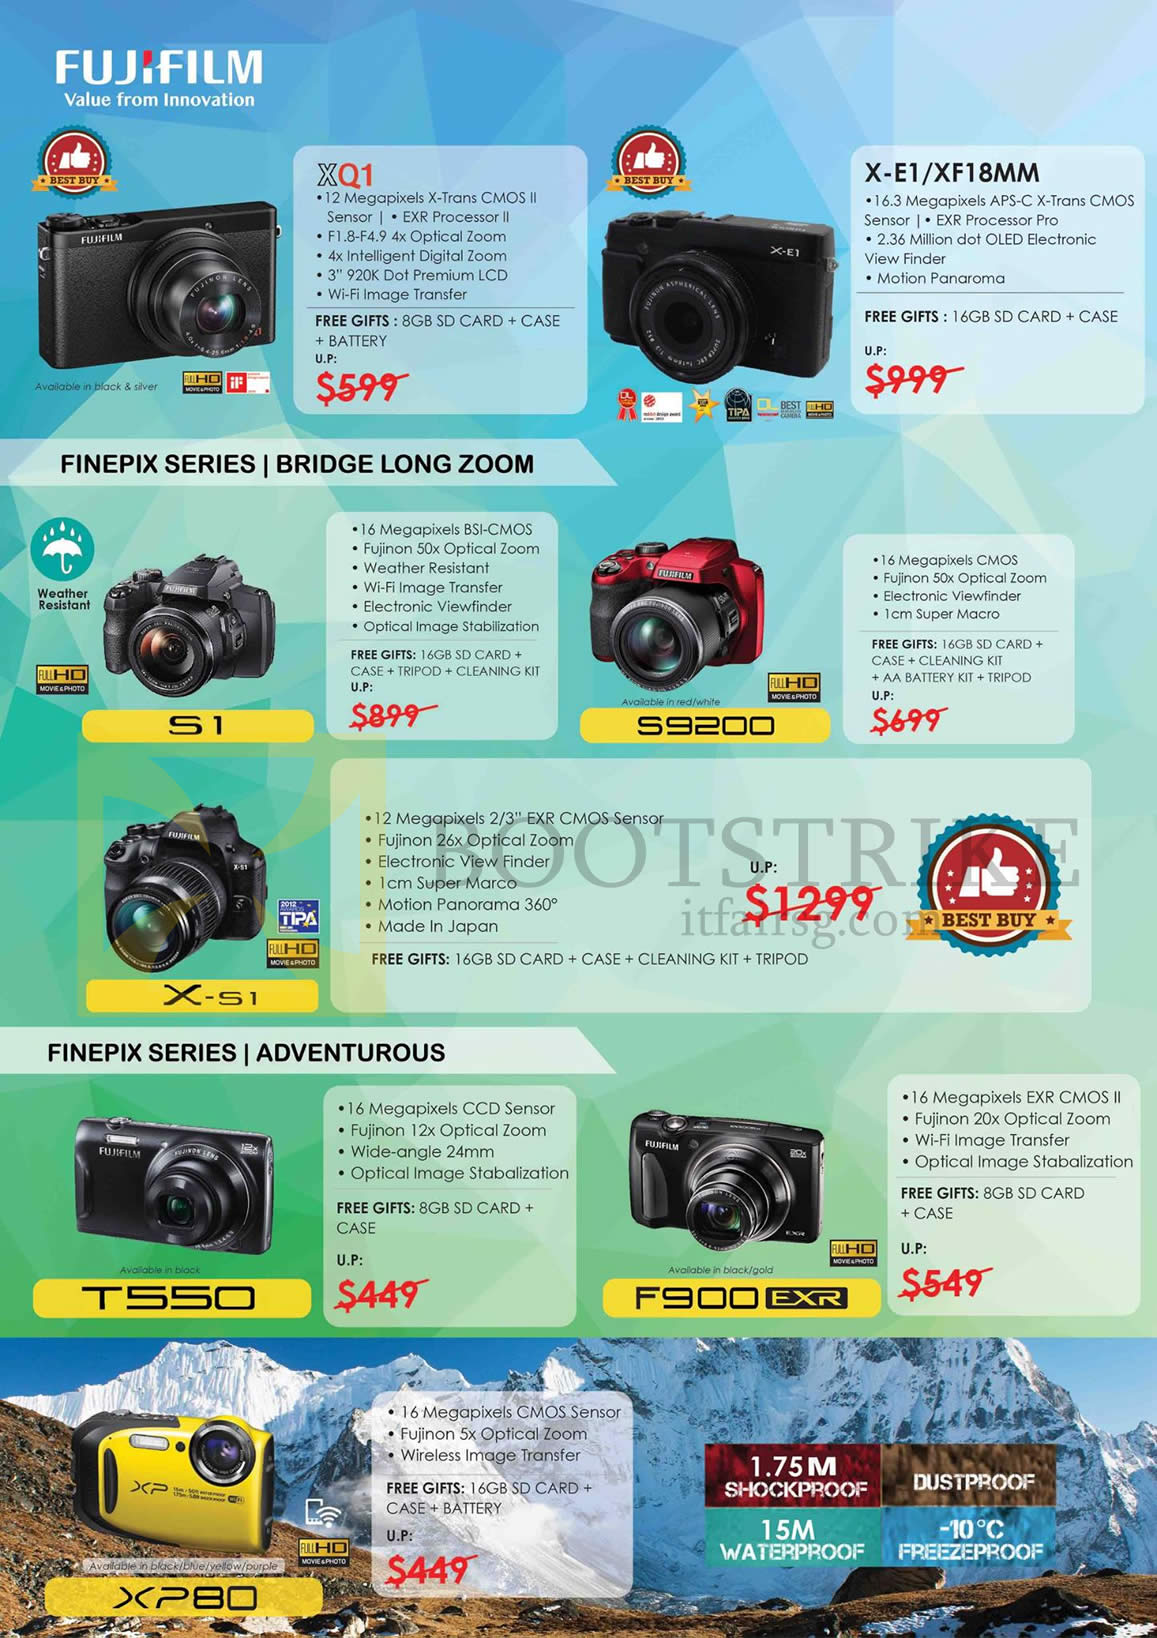 IT SHOW 2016 price list image brochure of Fujifilm Digital Cameras (No Prices) Finepix XQ1, X-E1, S1, S9200, X-S1, T550, F900, XP80